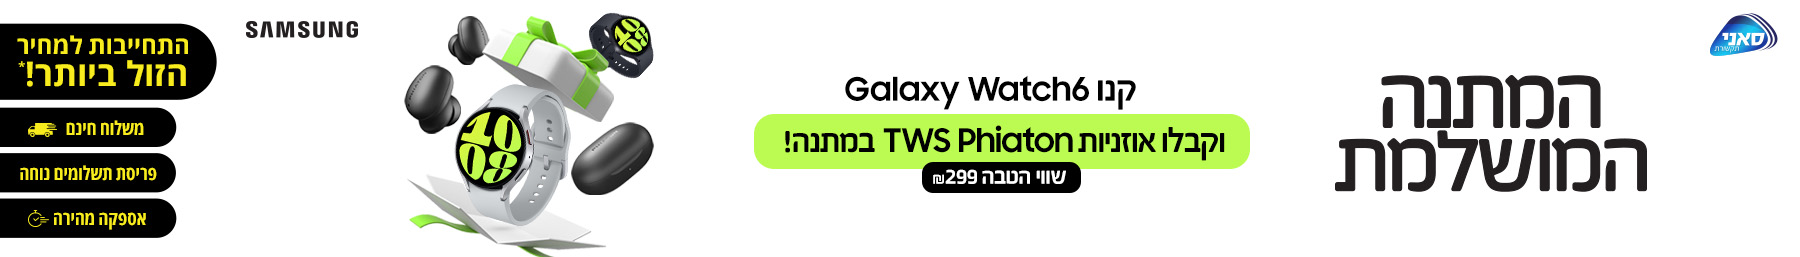 המתנה המושלמת, קנו Galaxy Watch6 וקבלו אוזניות TWS Phiaton במתנה!